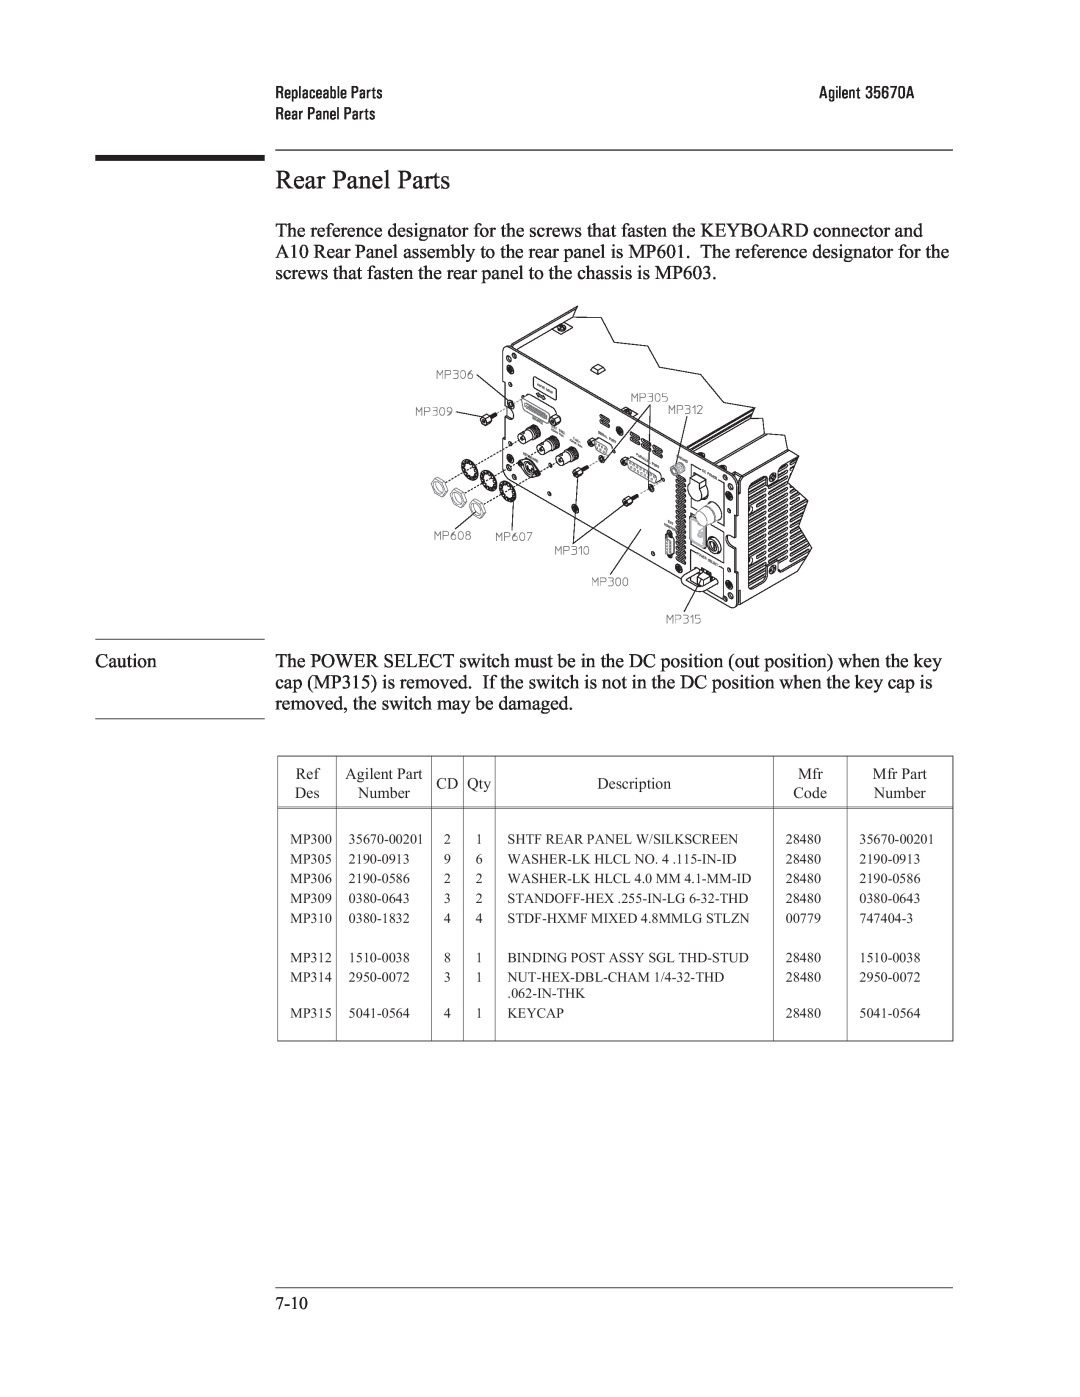 Agilent Technologies 35670-90066 manual Rear Panel Parts, Replaceable Parts 